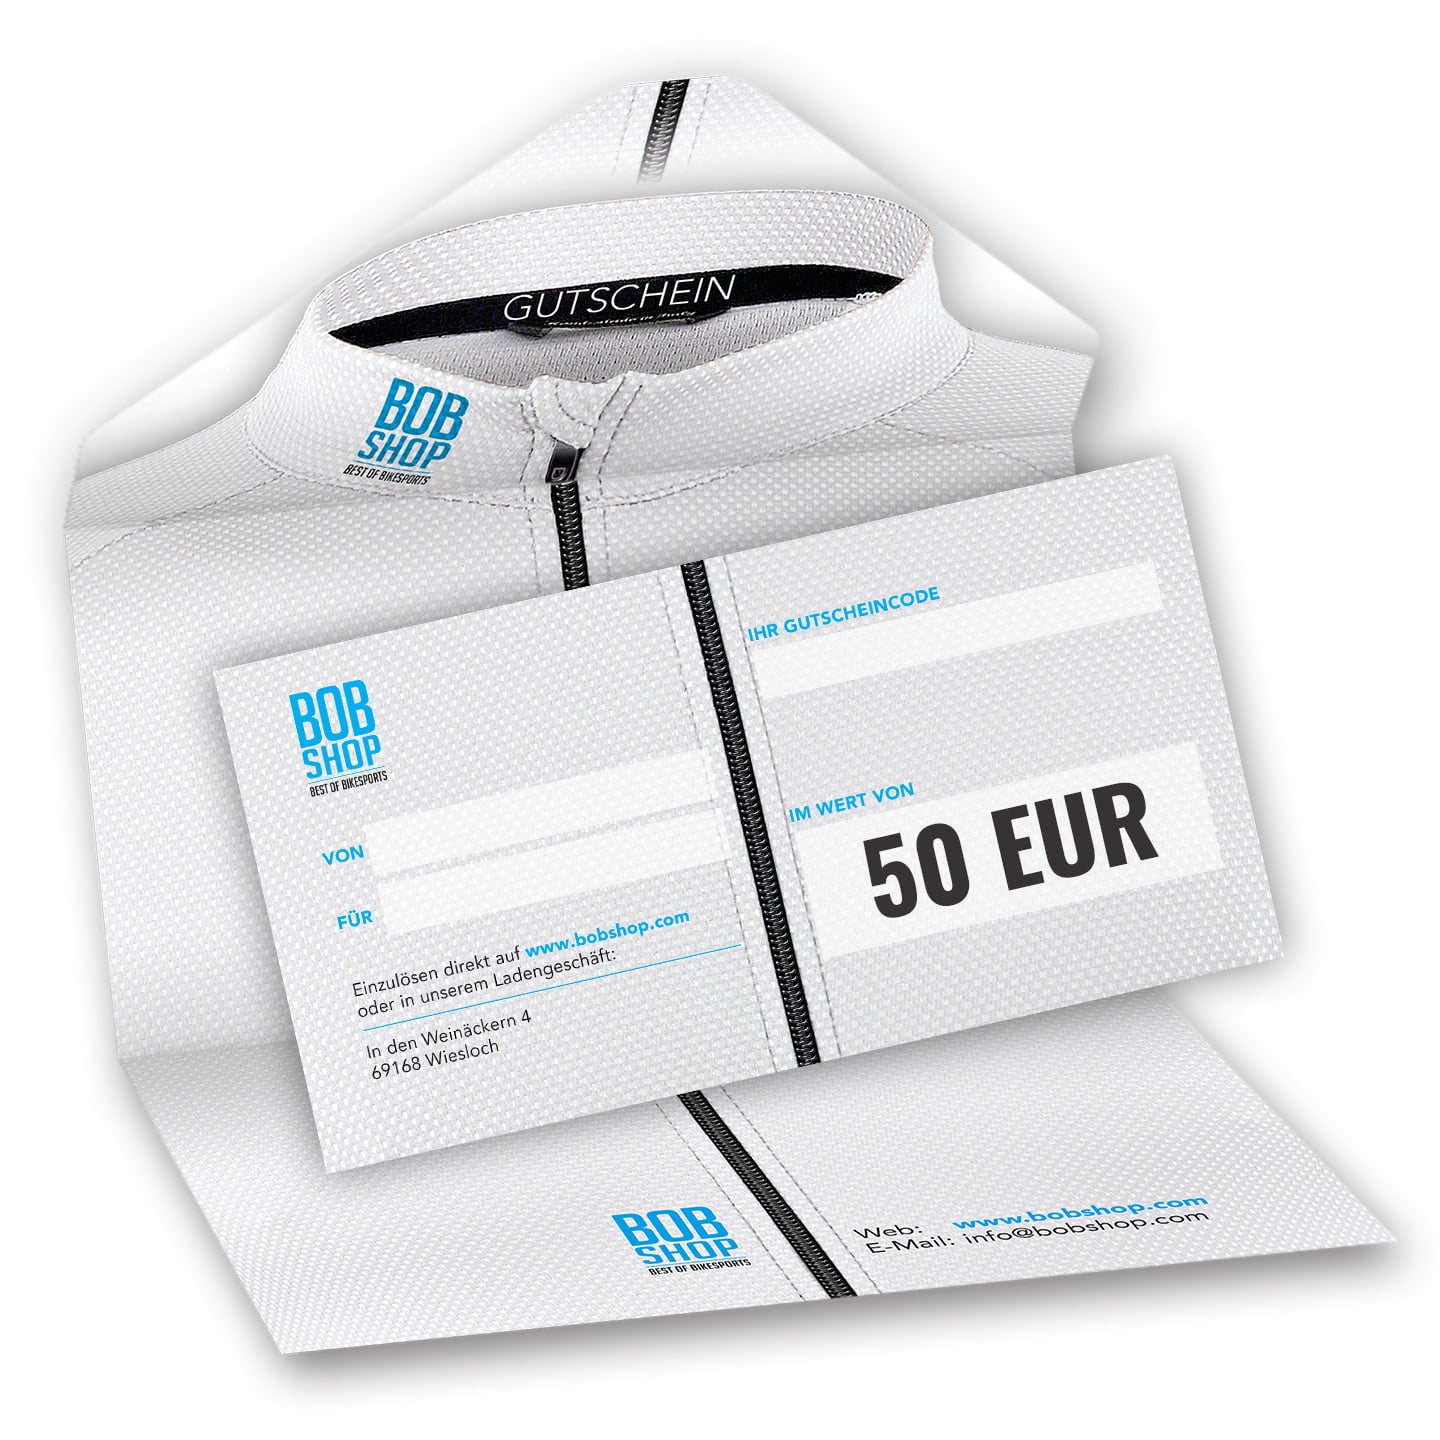 Photo Chèque-cadeau 50 EUR